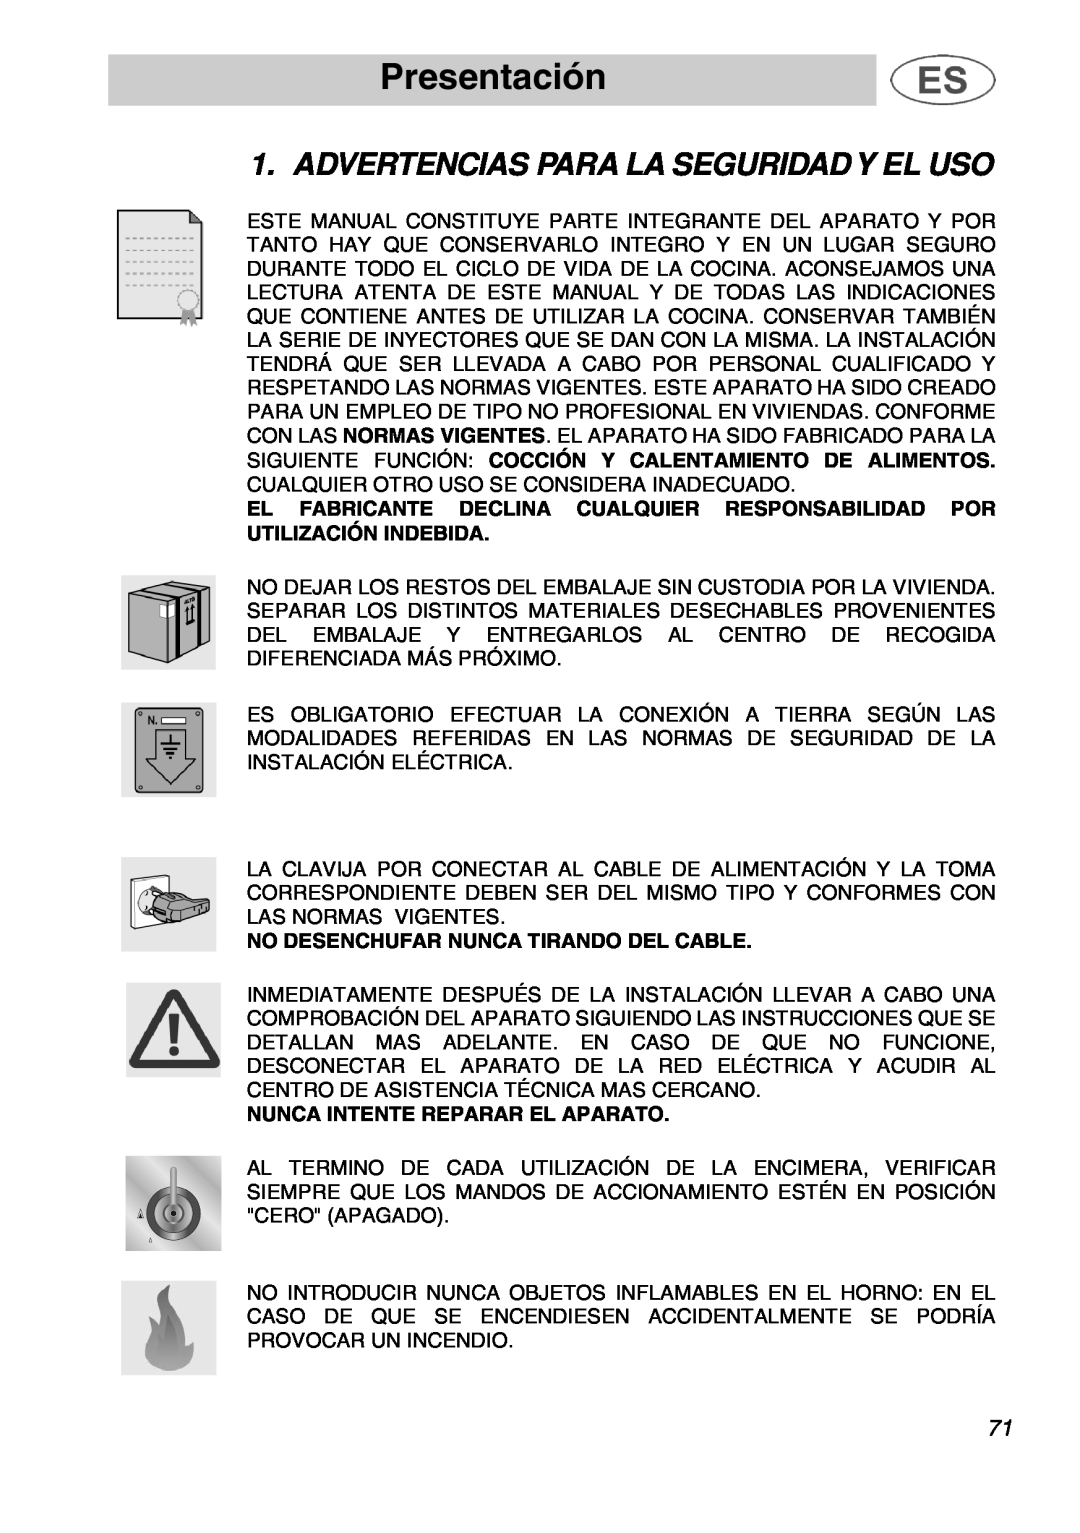 Smeg A1.1K instruction manual Presentación, Advertencias Para La Seguridad Y El Uso, No Desenchufar Nunca Tirando Del Cable 